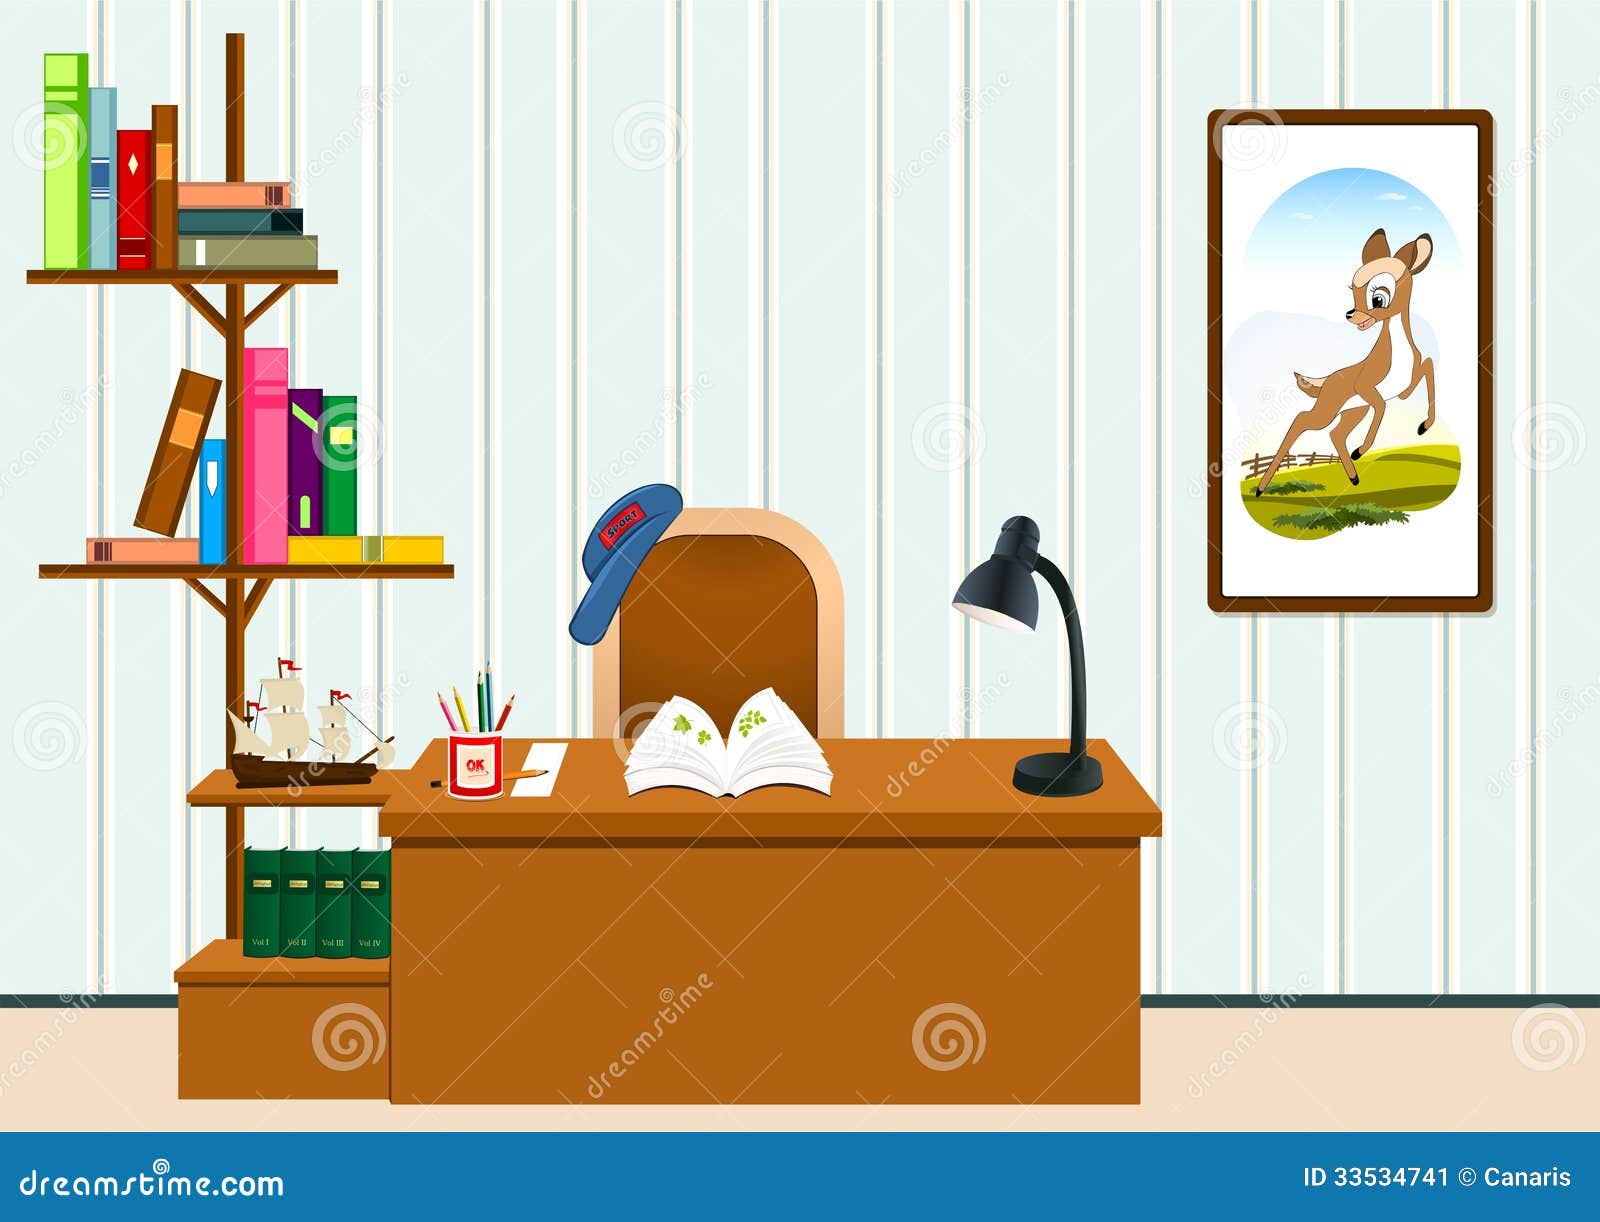 study-room-children-desk-shelves-books-lamp-pencils-painting-33534741.jpg